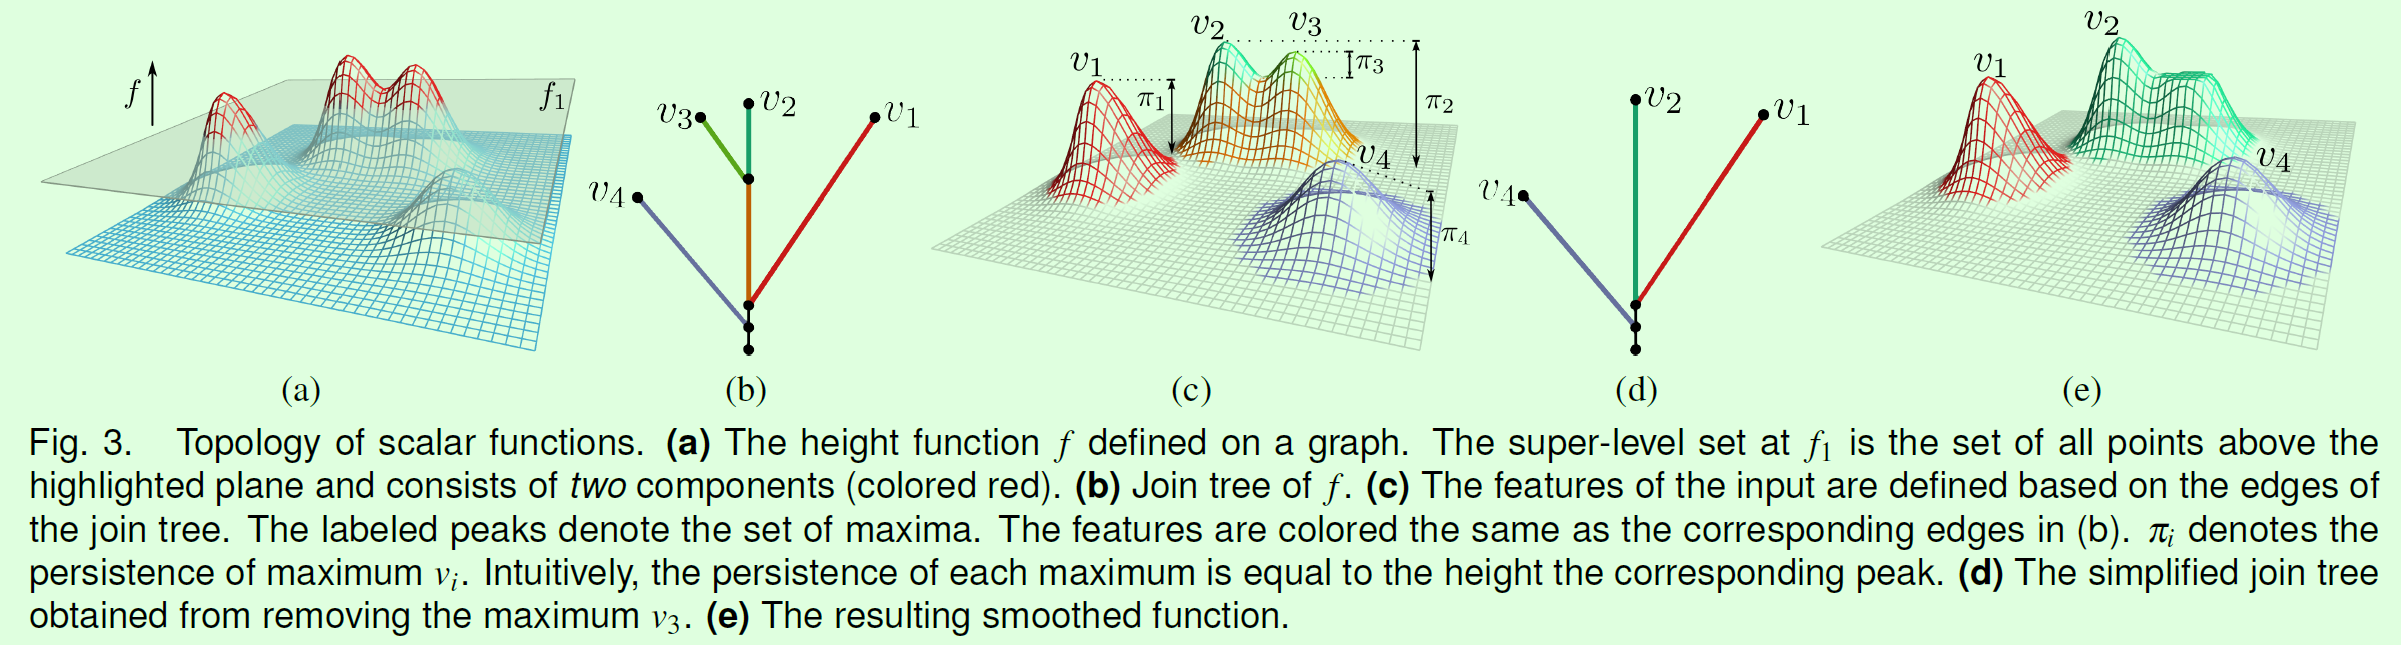 计算拓扑学相关概念